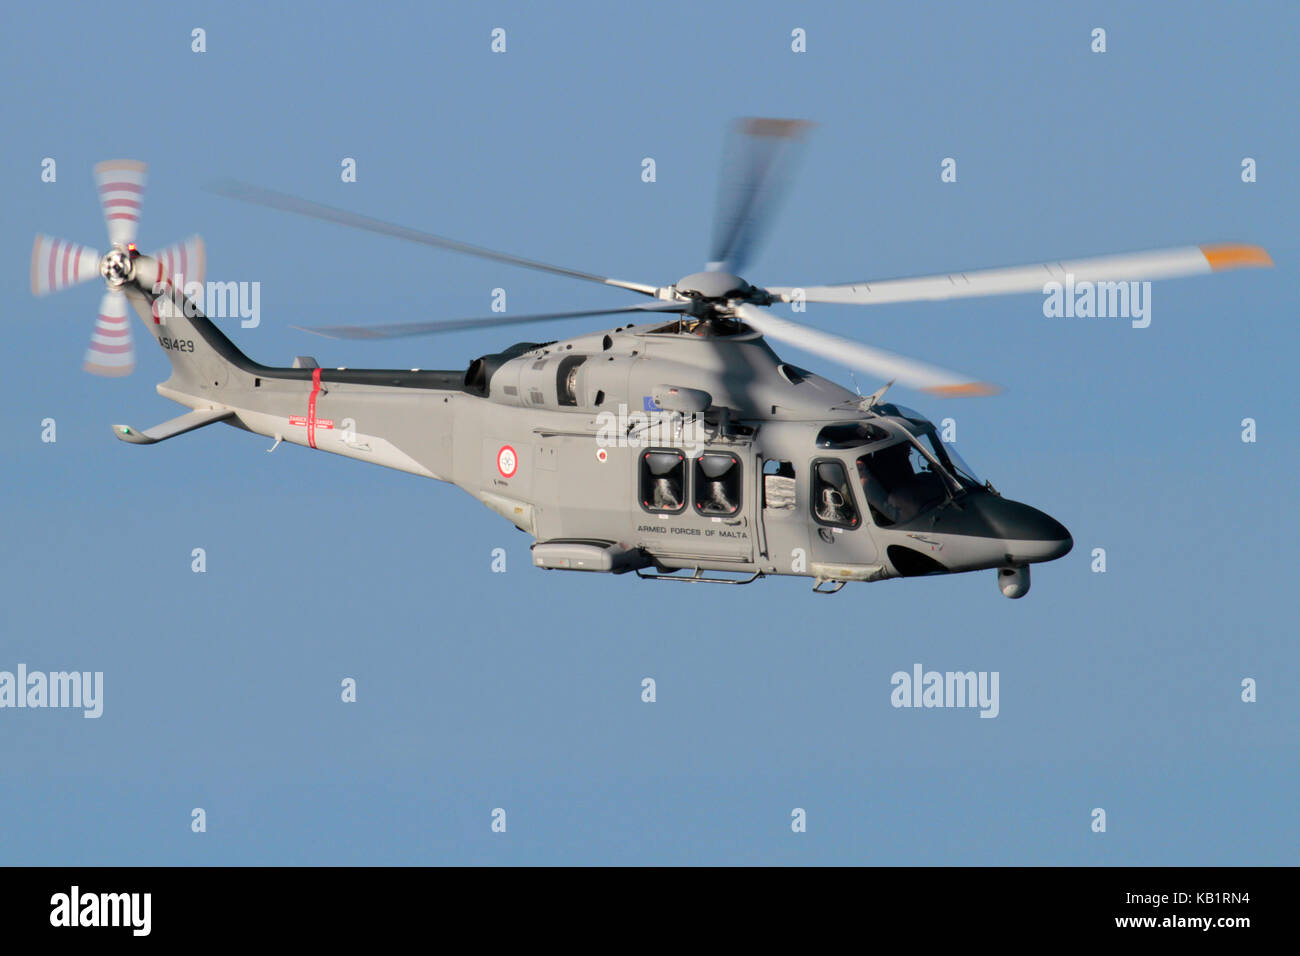 Hubschrauber fliegen in der Luft. AgustaWestland AW139 Seepatrouille und Such- und Rettungsflugzeug der Streitkräfte von Malta vor einem blauen Himmel. Stockfoto